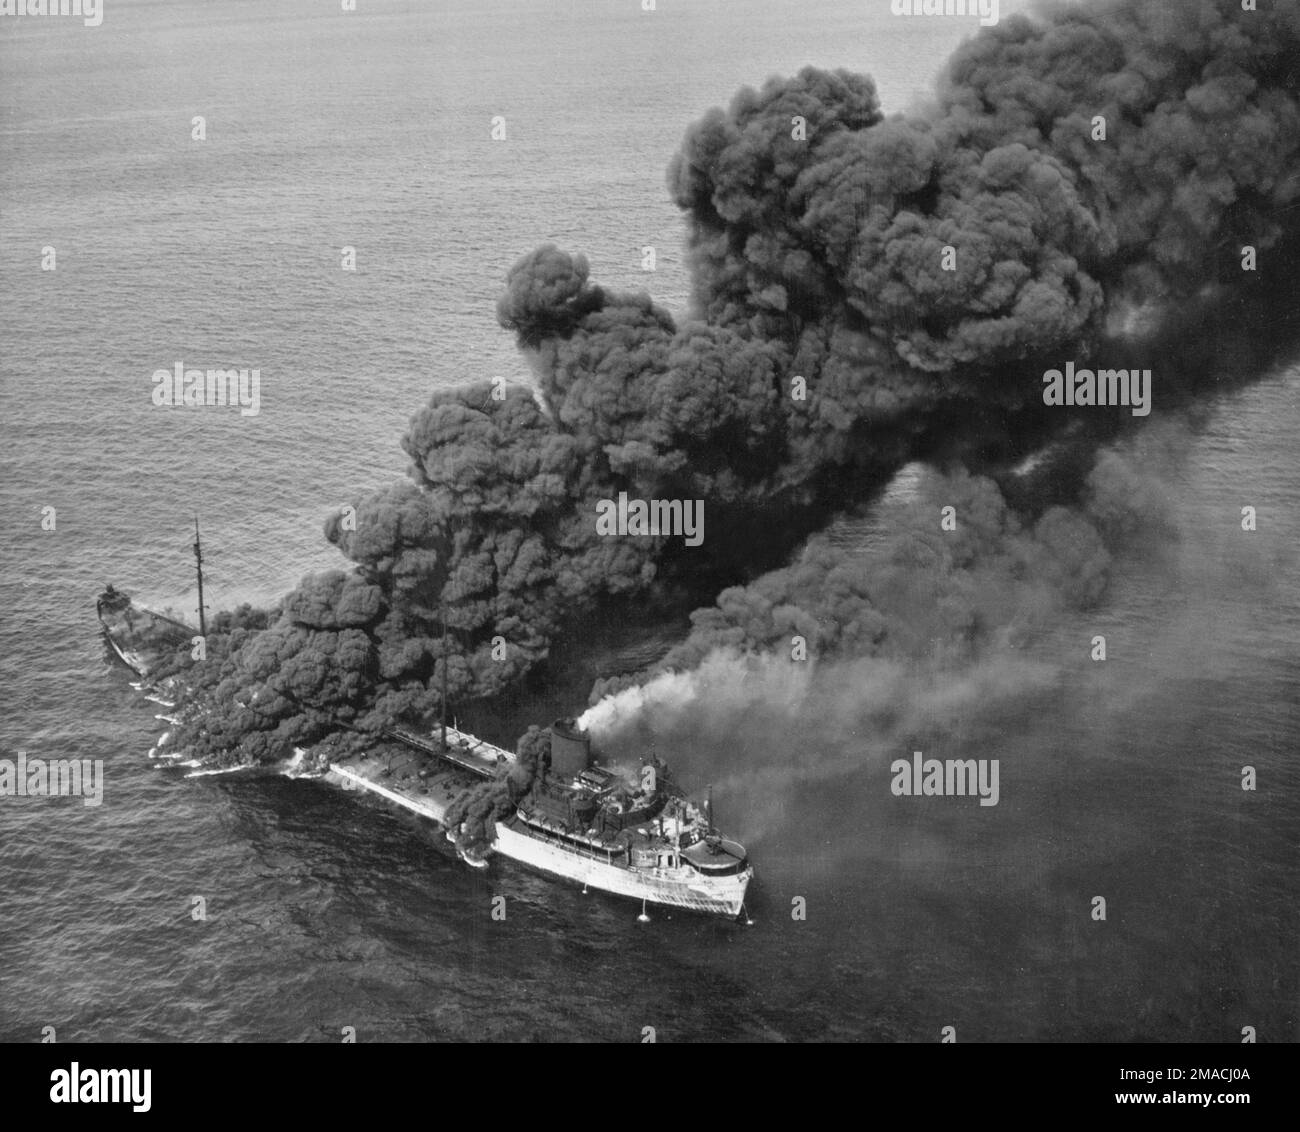 Ein Jahrgangsfoto um 1942/1943 von einem amerikanischen Öltanker, der im Atlantik brannte, nachdem er im Zweiten Weltkrieg von einem deutschen U-Boot oder U-Boot torpediert wurde Stockfoto